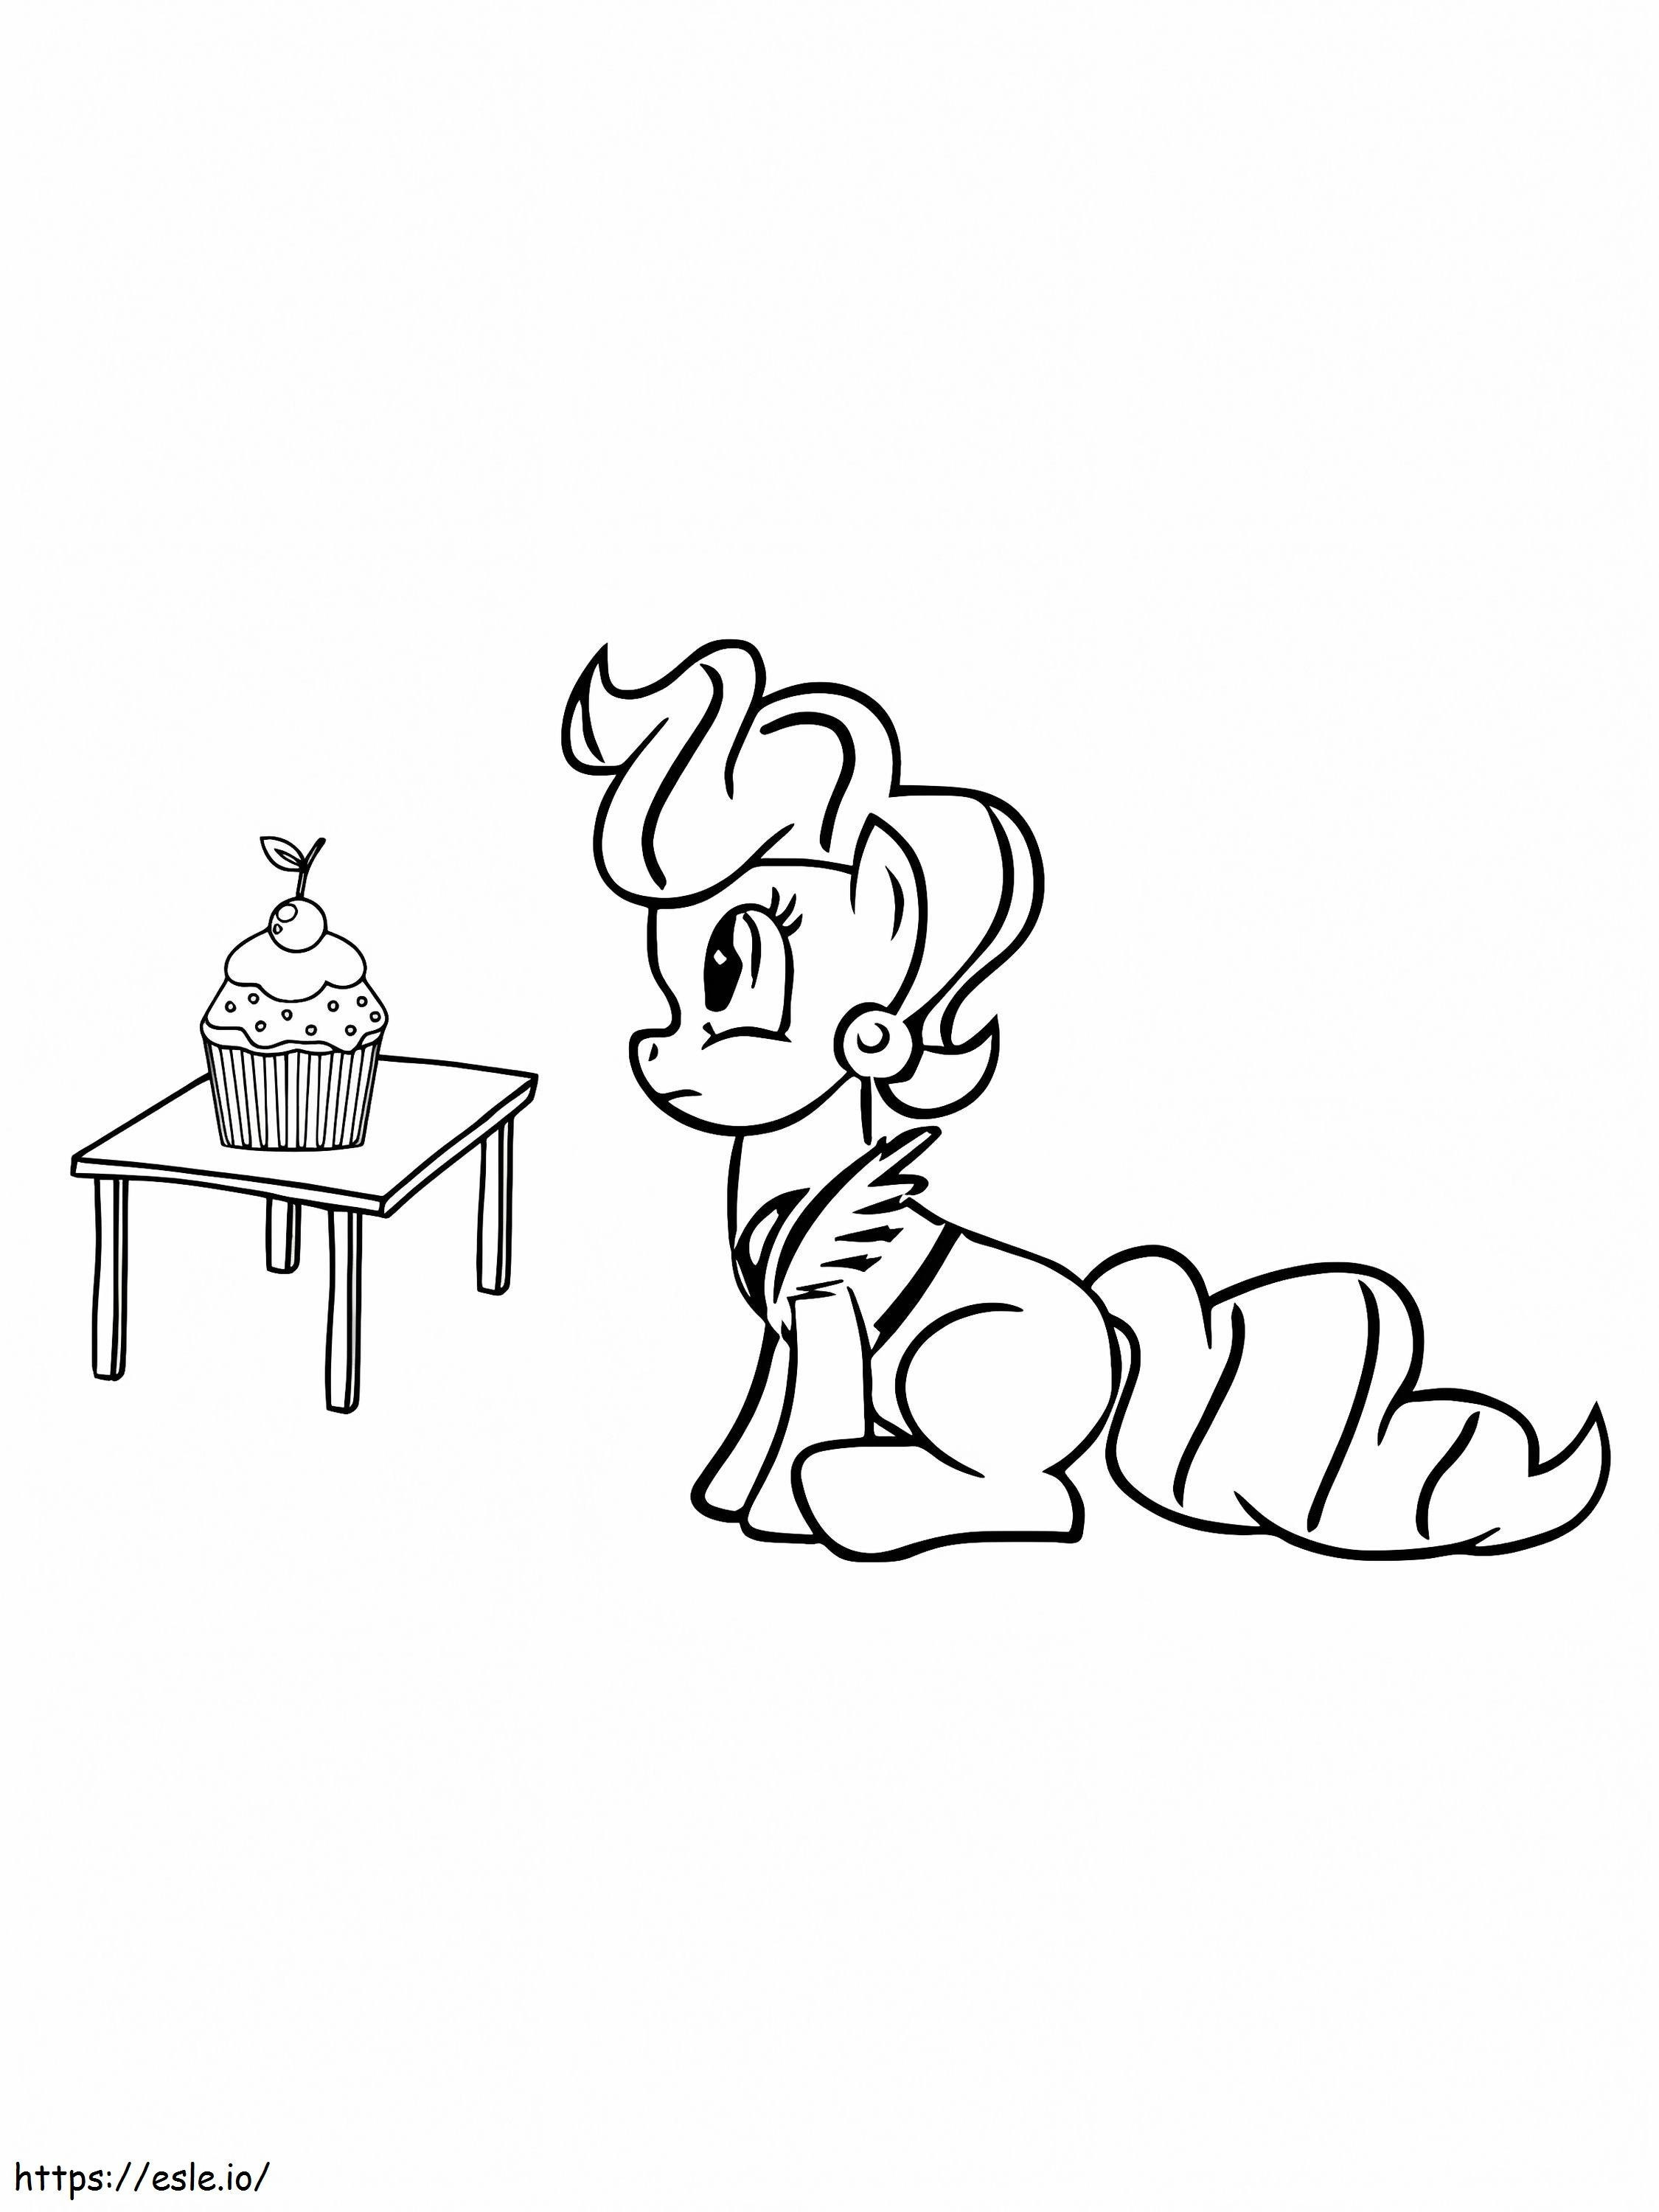 My Little Pony Mrs Tort și Cupcake Pe Masă de colorat